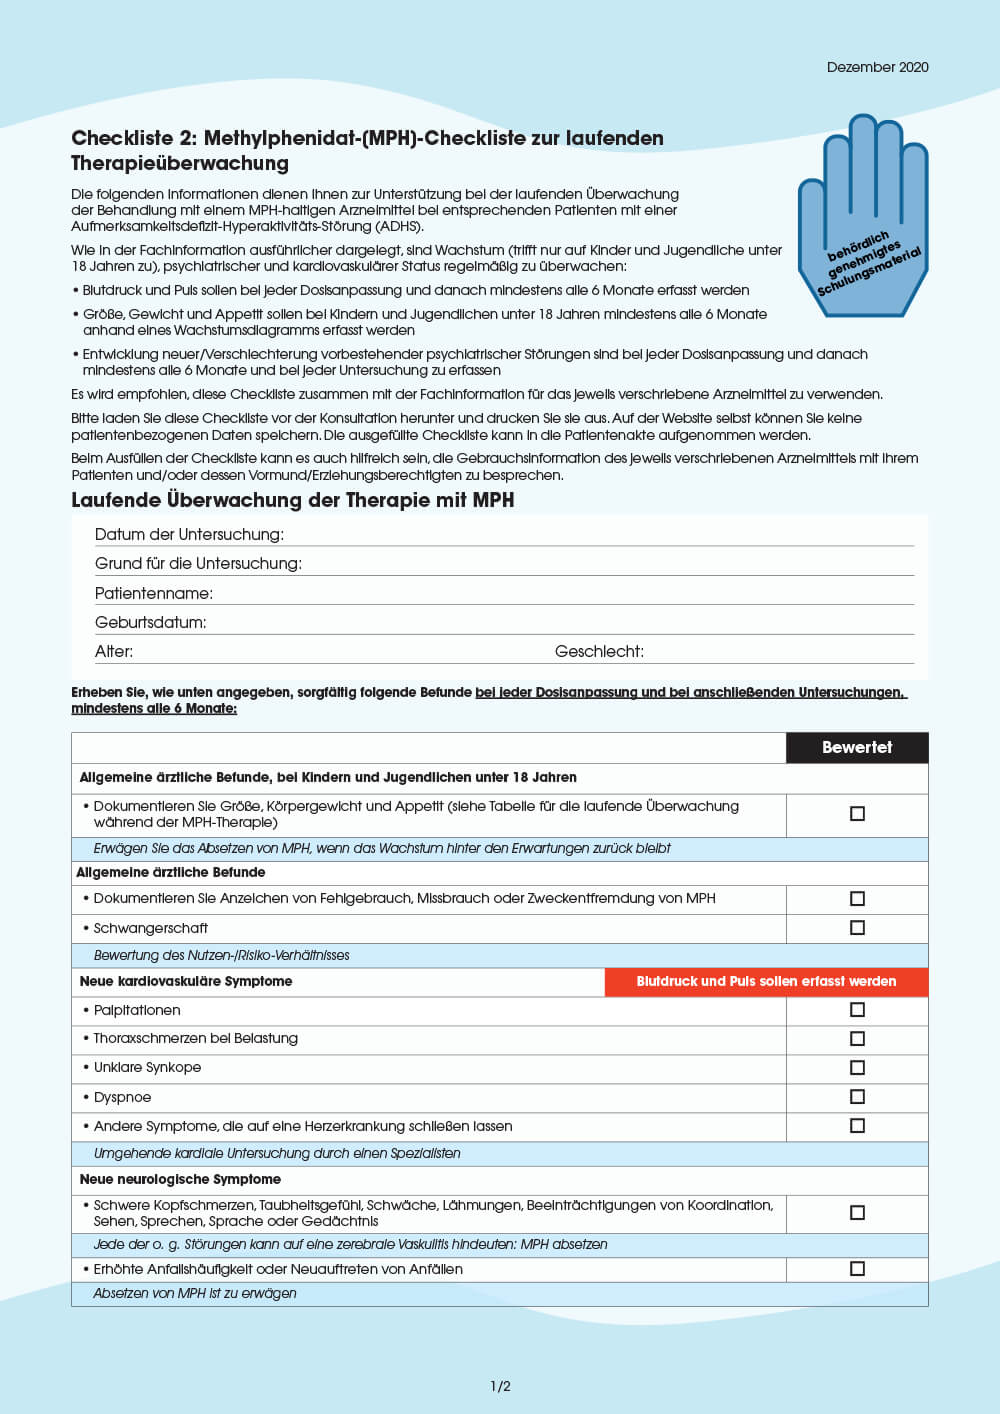 Vorschau: Checkliste 2: Methylphenidat (MPH)-Checkliste für die laufende Überwachung